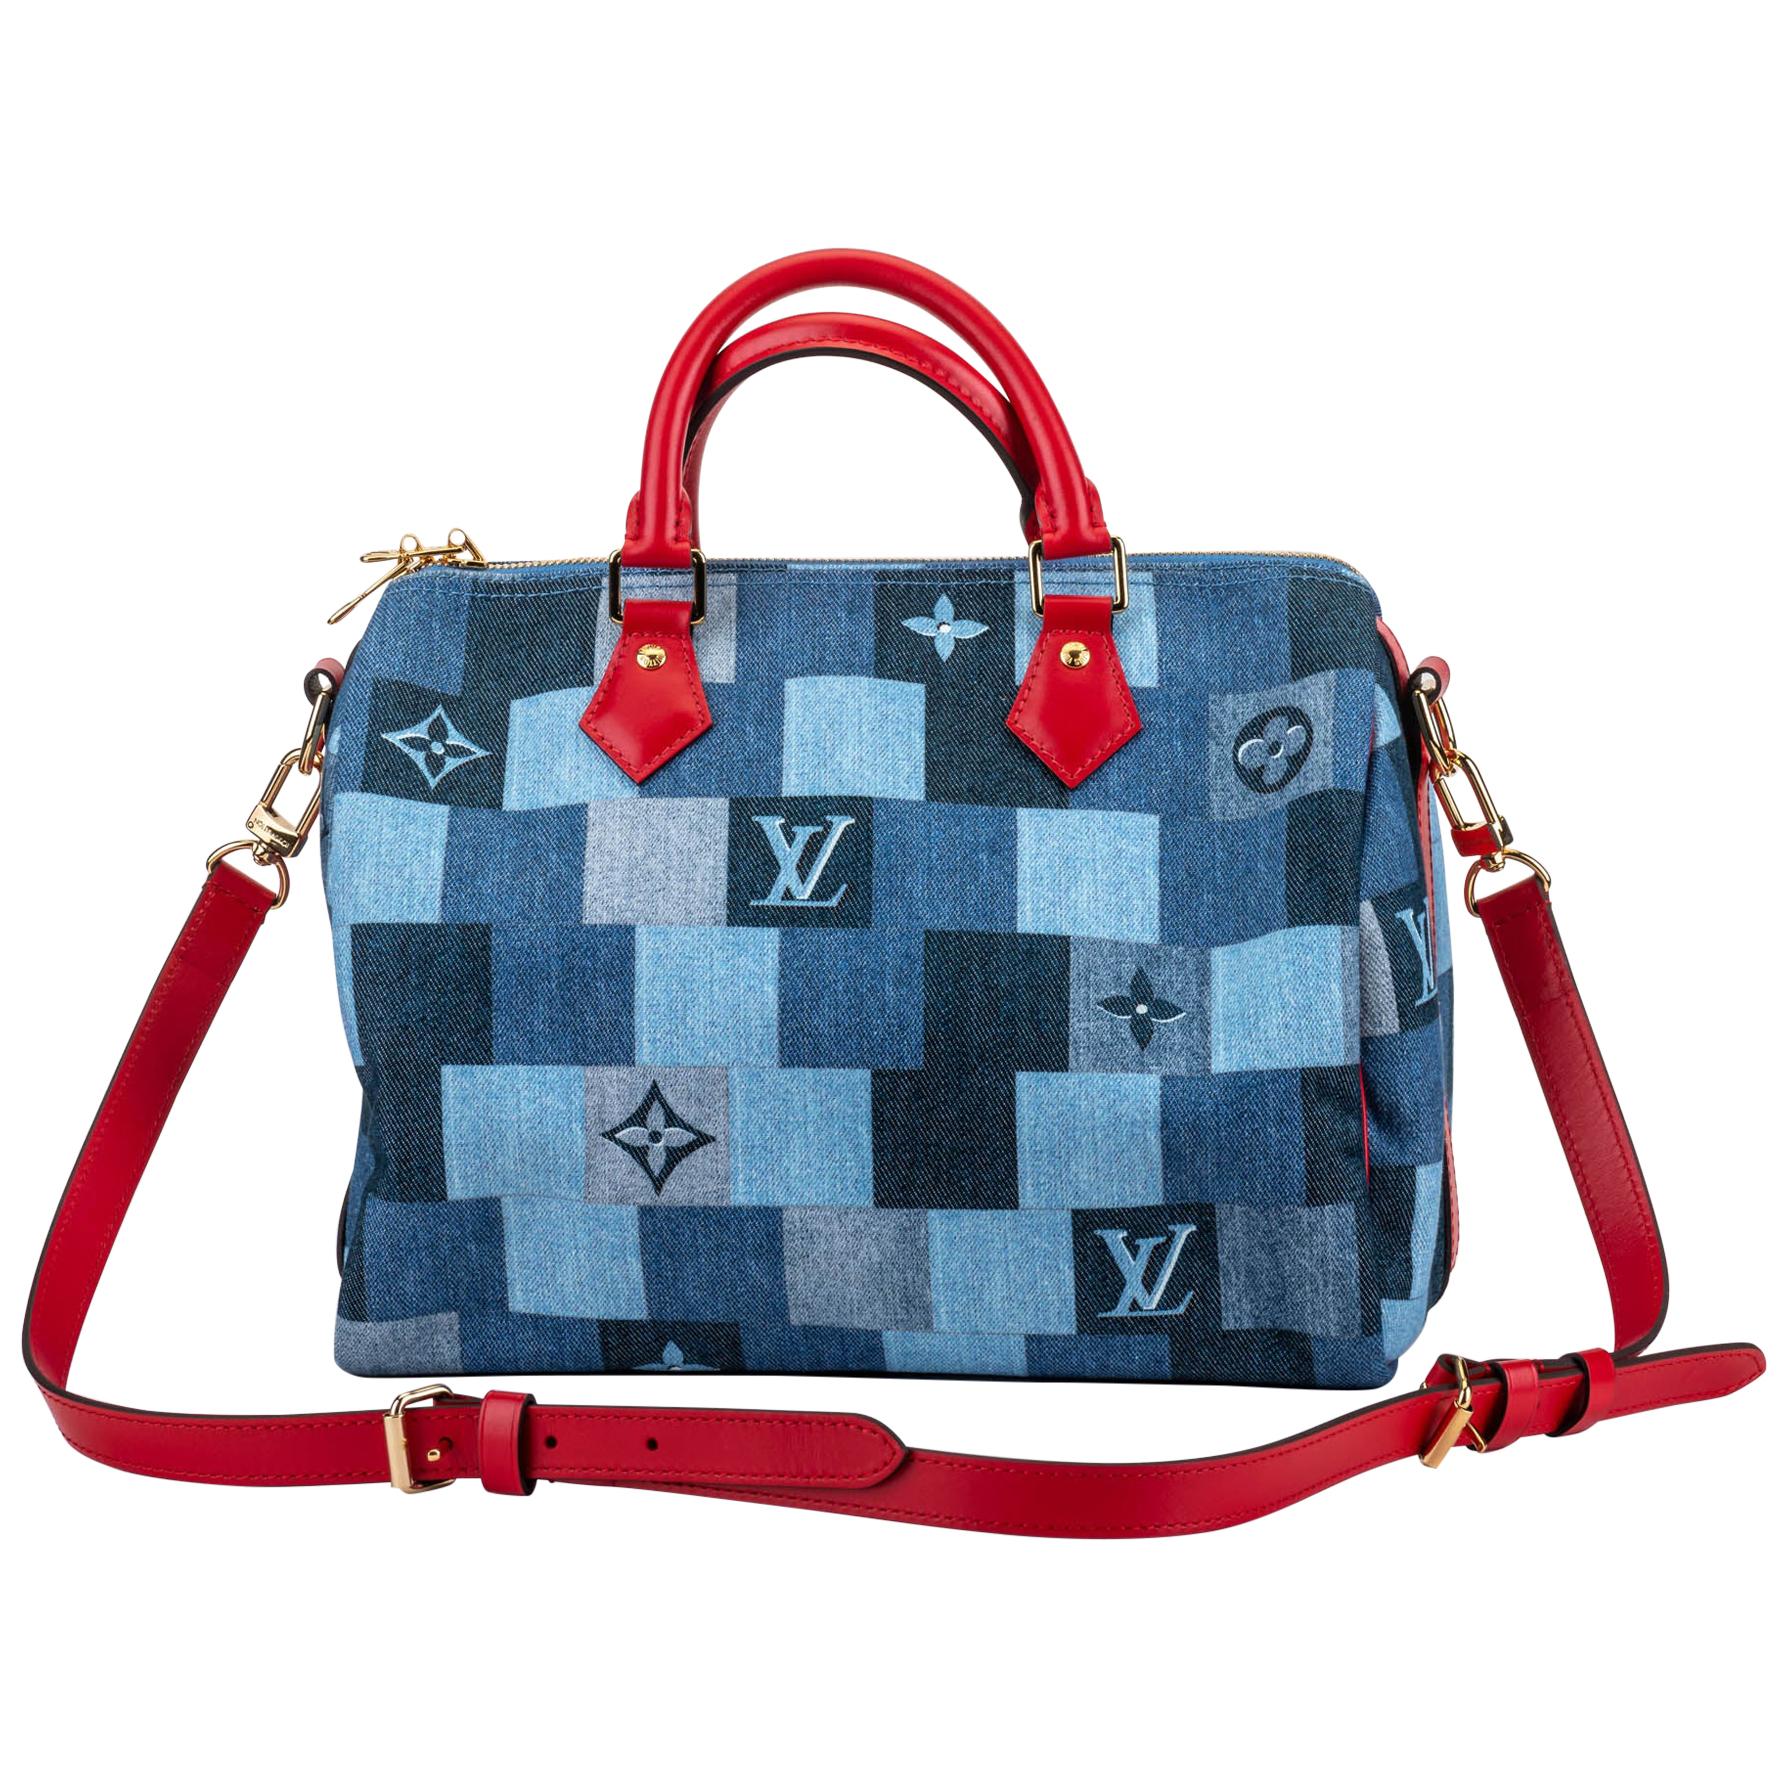 New in Box Louis Vuitton Denim Speedy 30 Bag